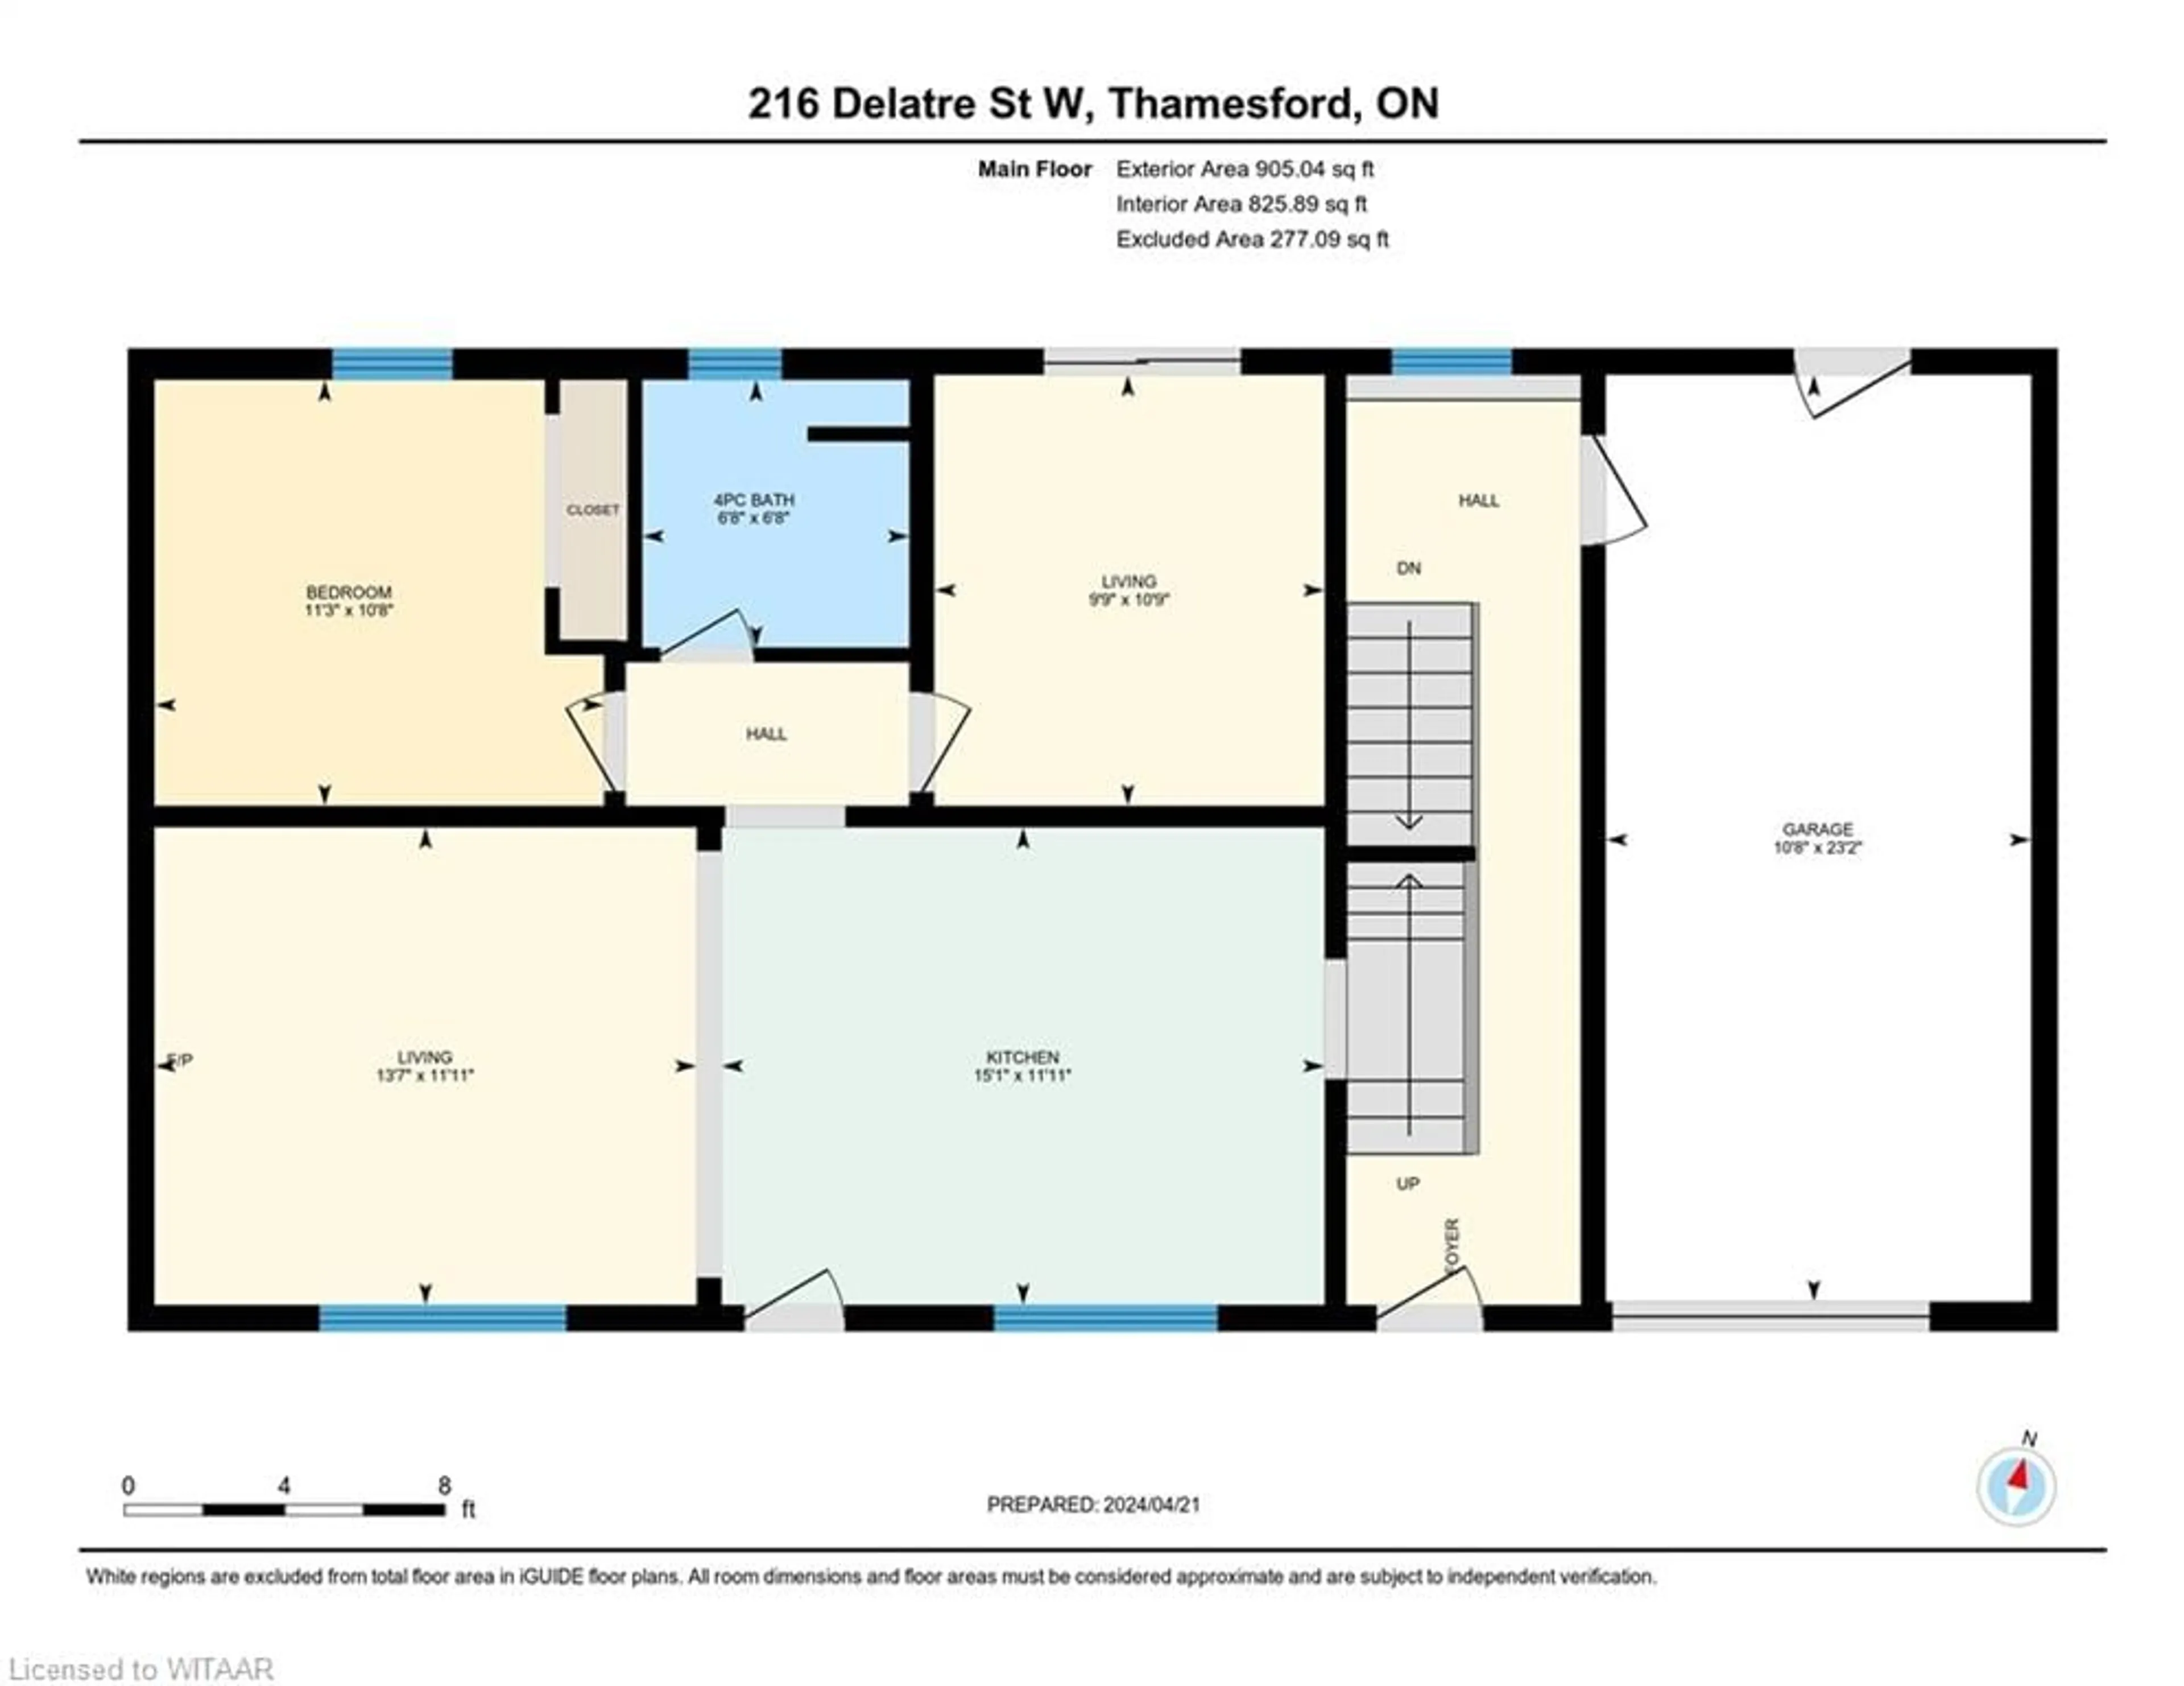 Floor plan for 216 Delatre St, Thamesford Ontario N0M 2M0